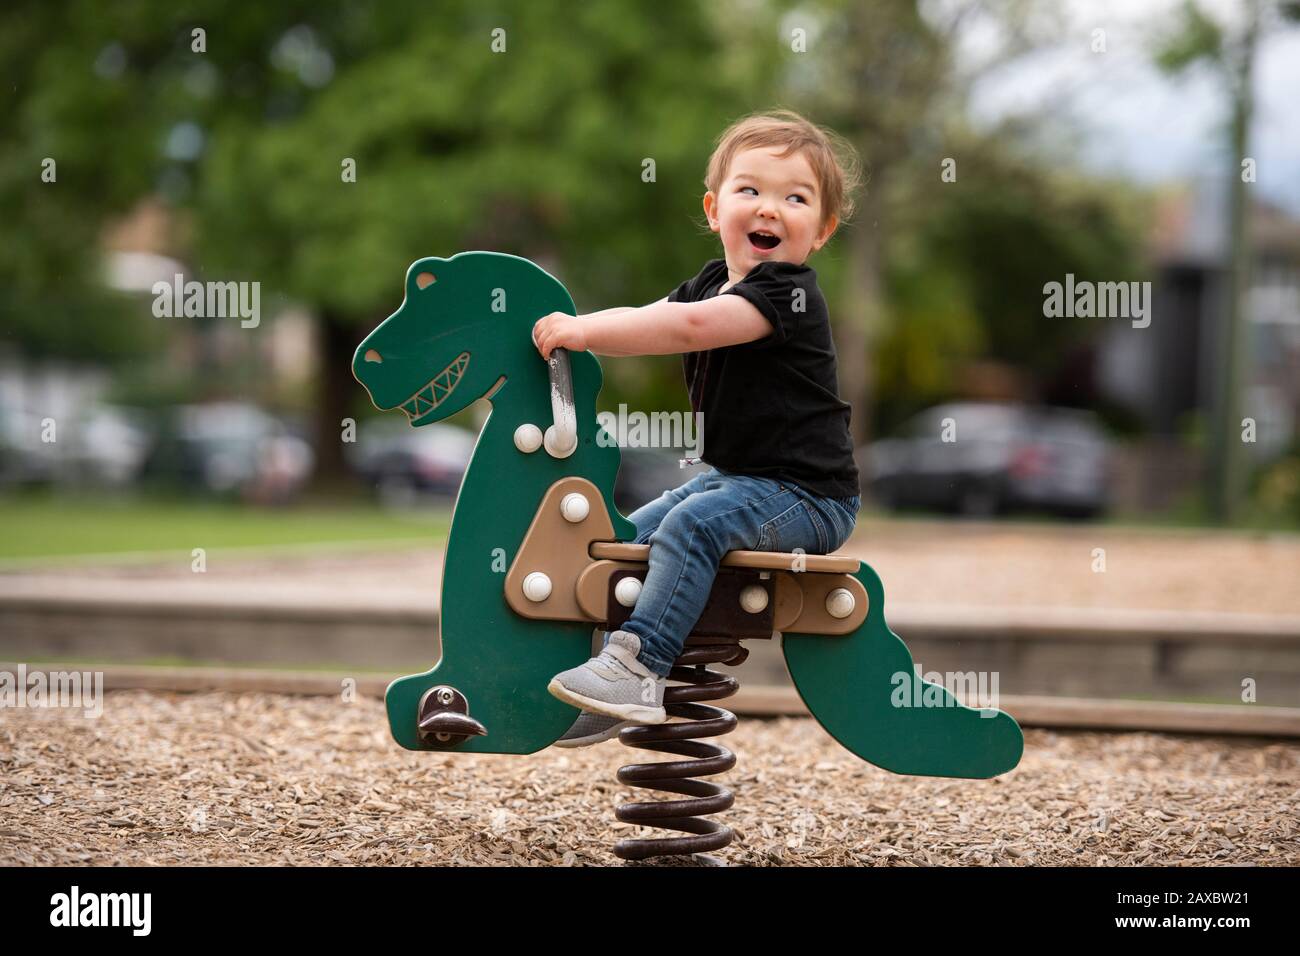 Unbeschwert süßes kleines Mädchen, das Dinosaurier-Spielzeug auf dem Spielplatz reitet Stockfoto